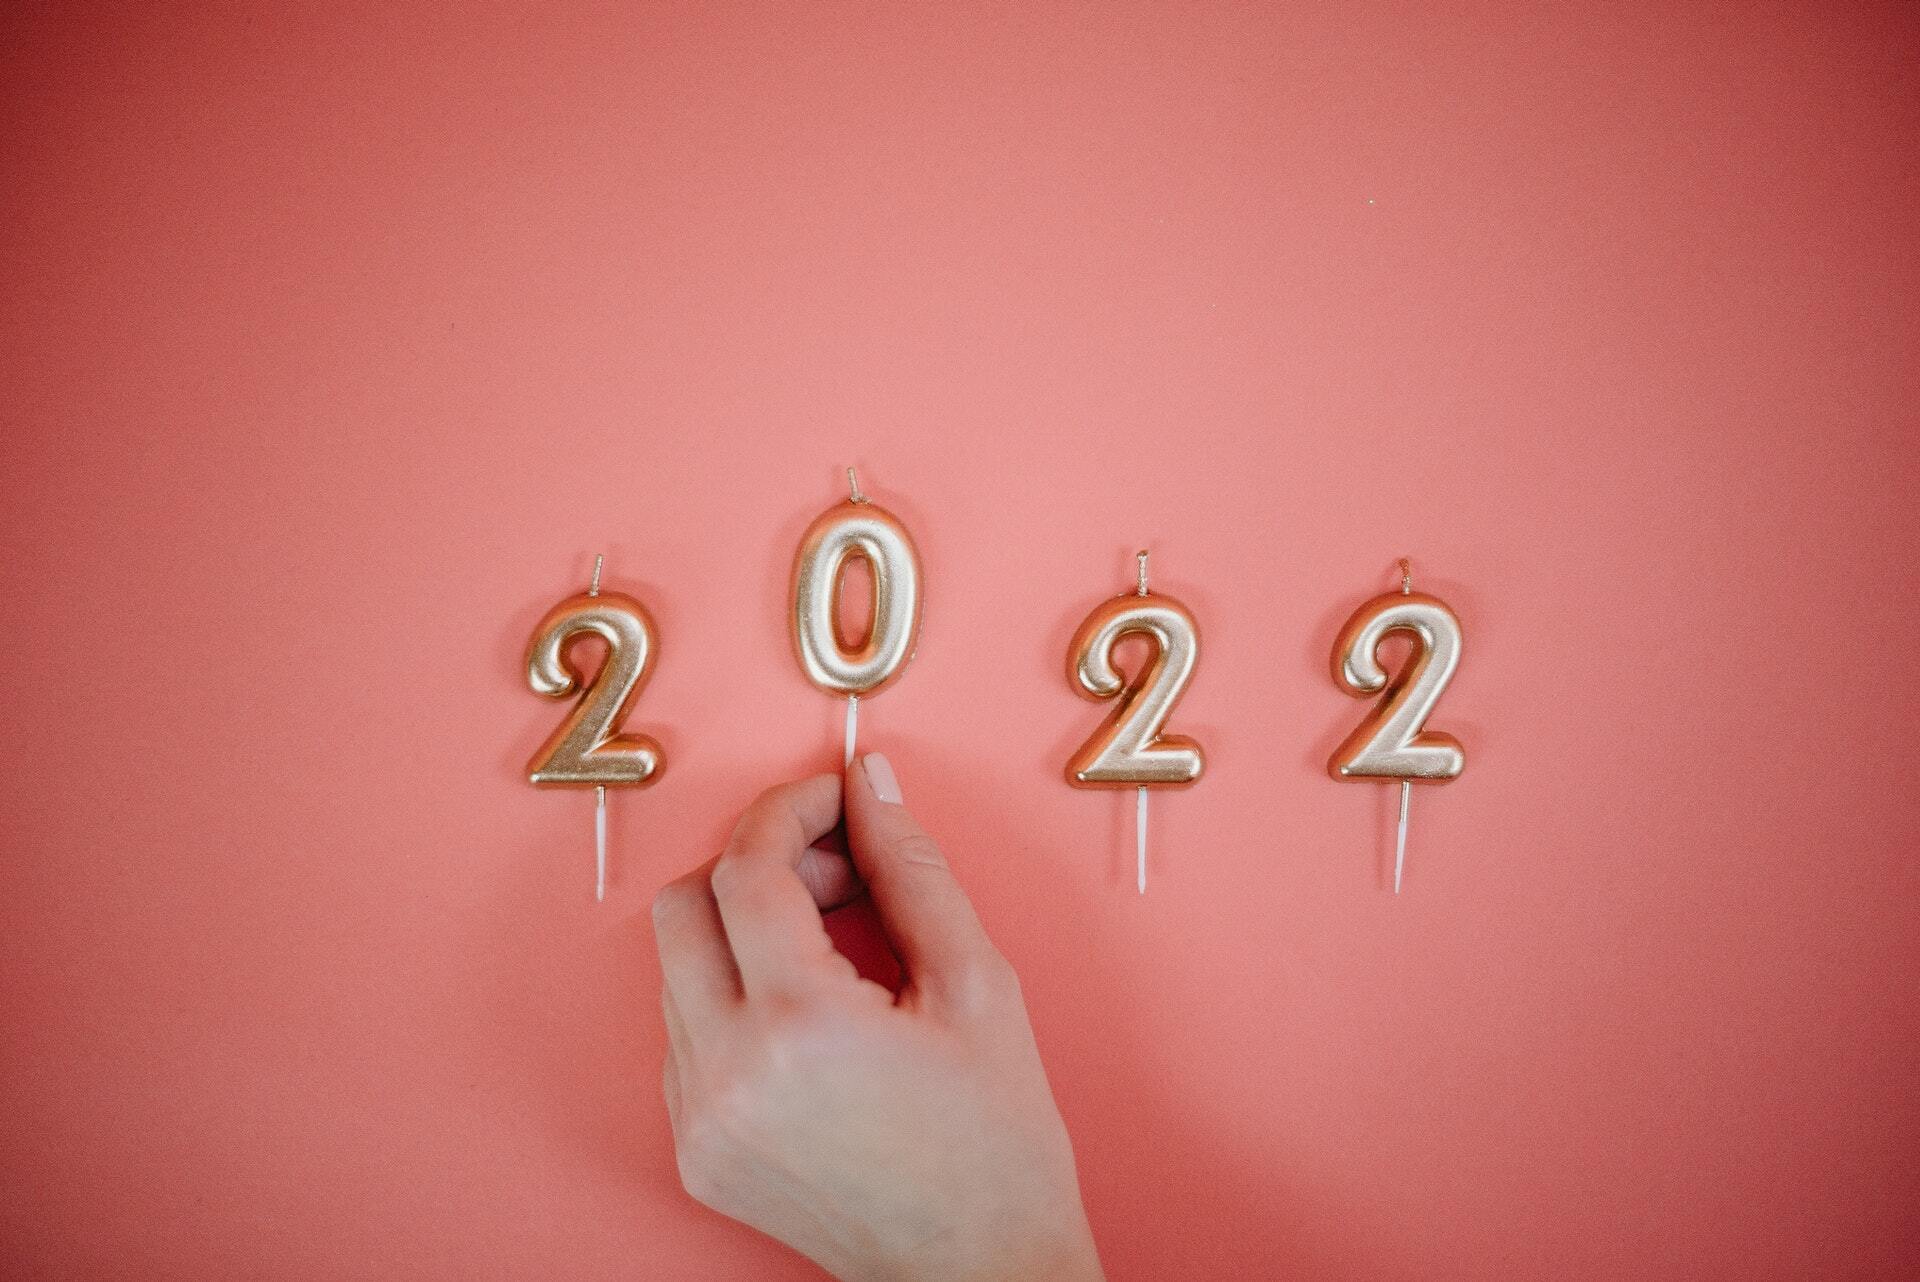 12 февраля 2022 года рекомендуют загадывать самые смелые желания